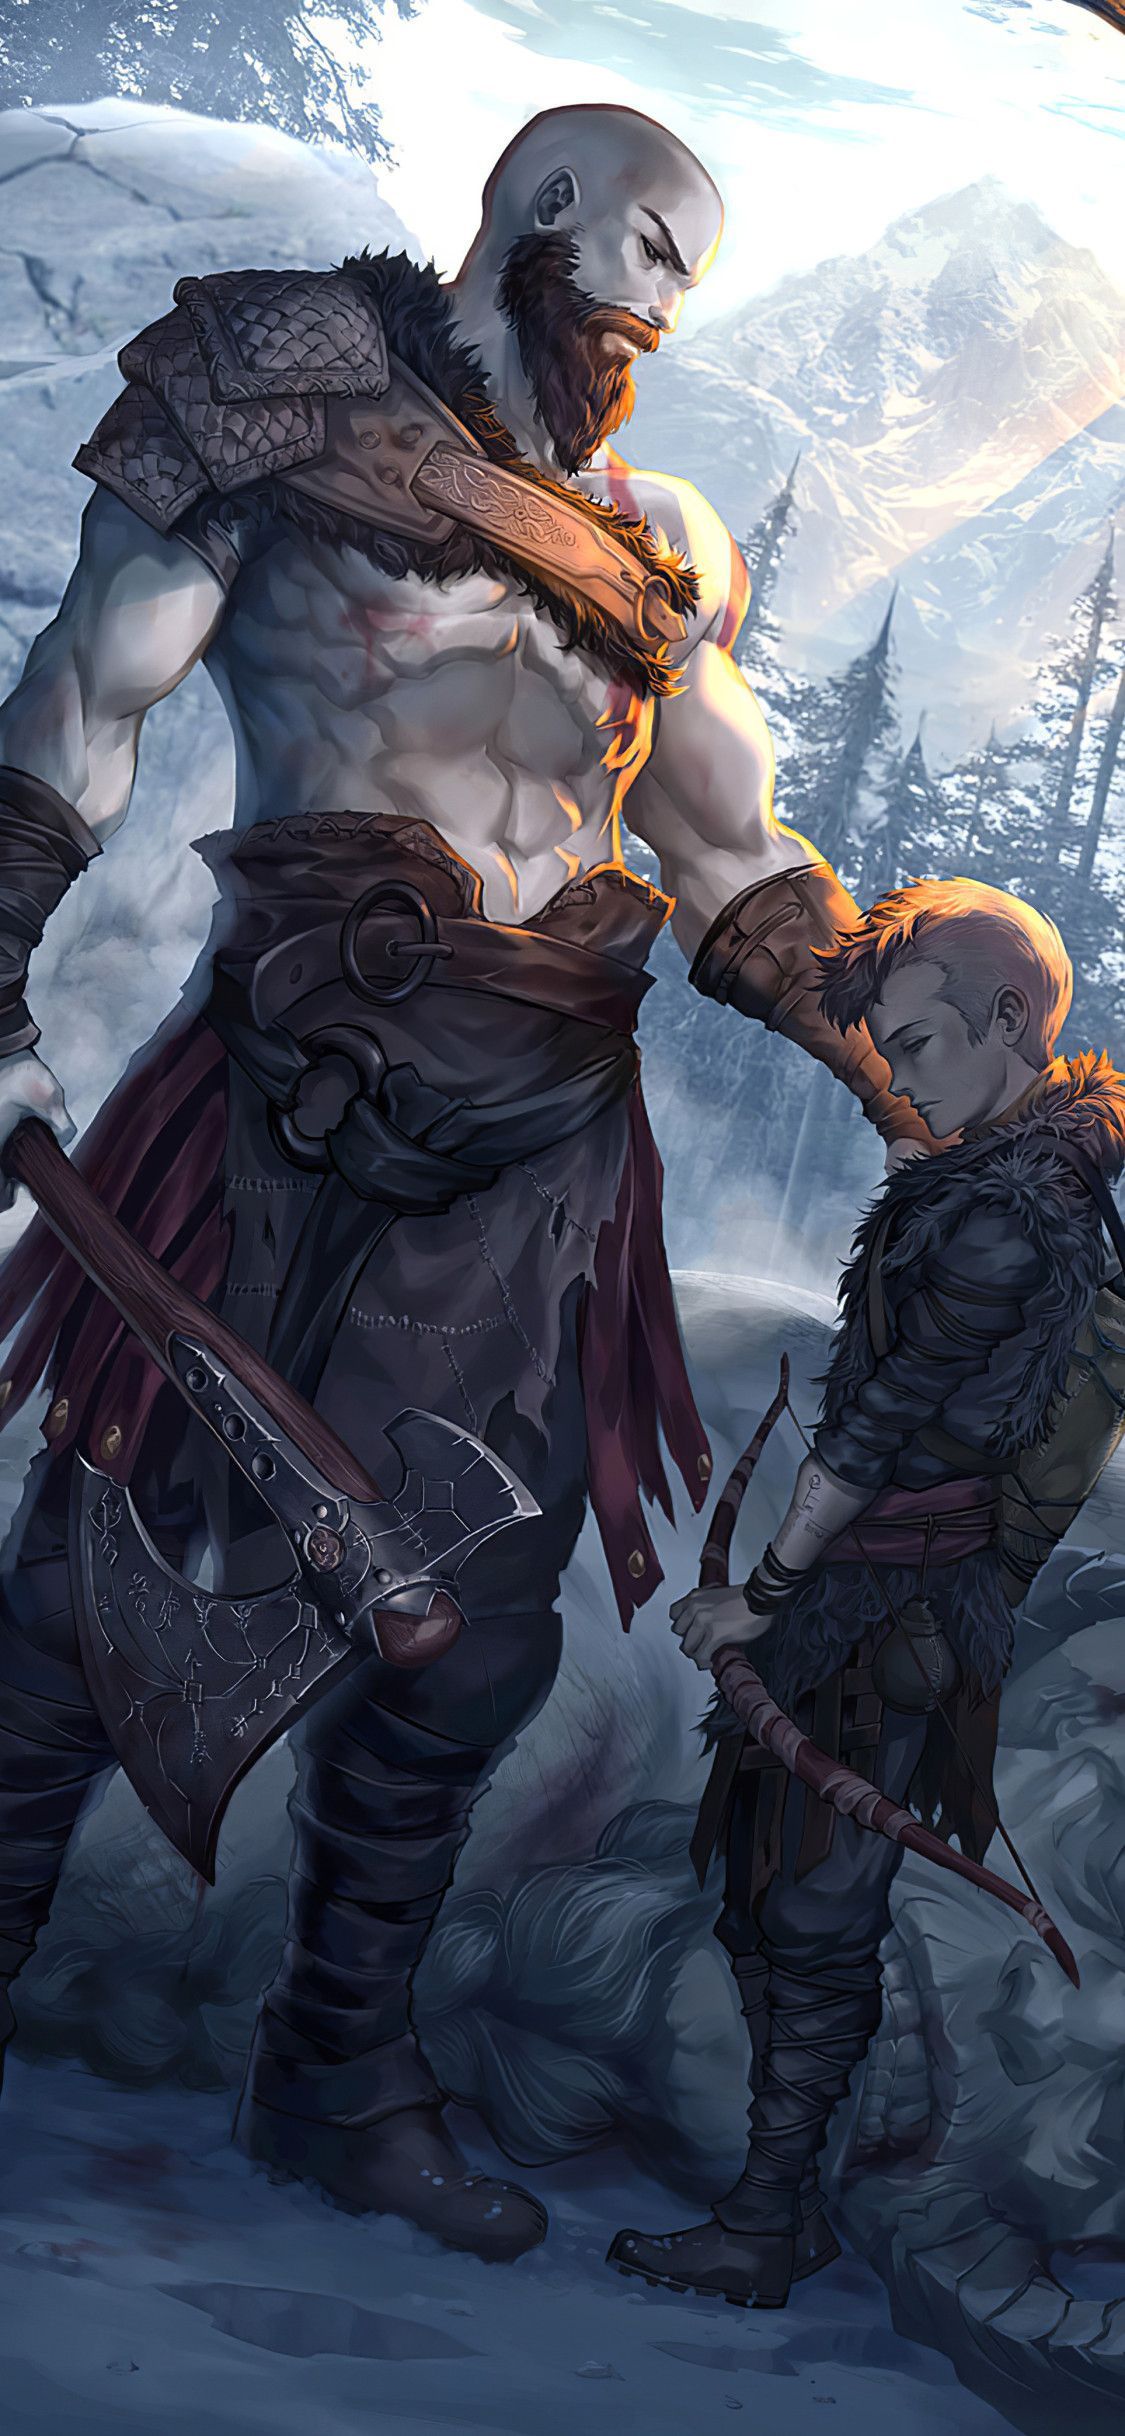 Kratos And Atreus God Of War Art iPhone XS, iPhone iPhone X HD 4k Wallpaper, Image, Background, P. Kratos god of war, God of war, God of war series